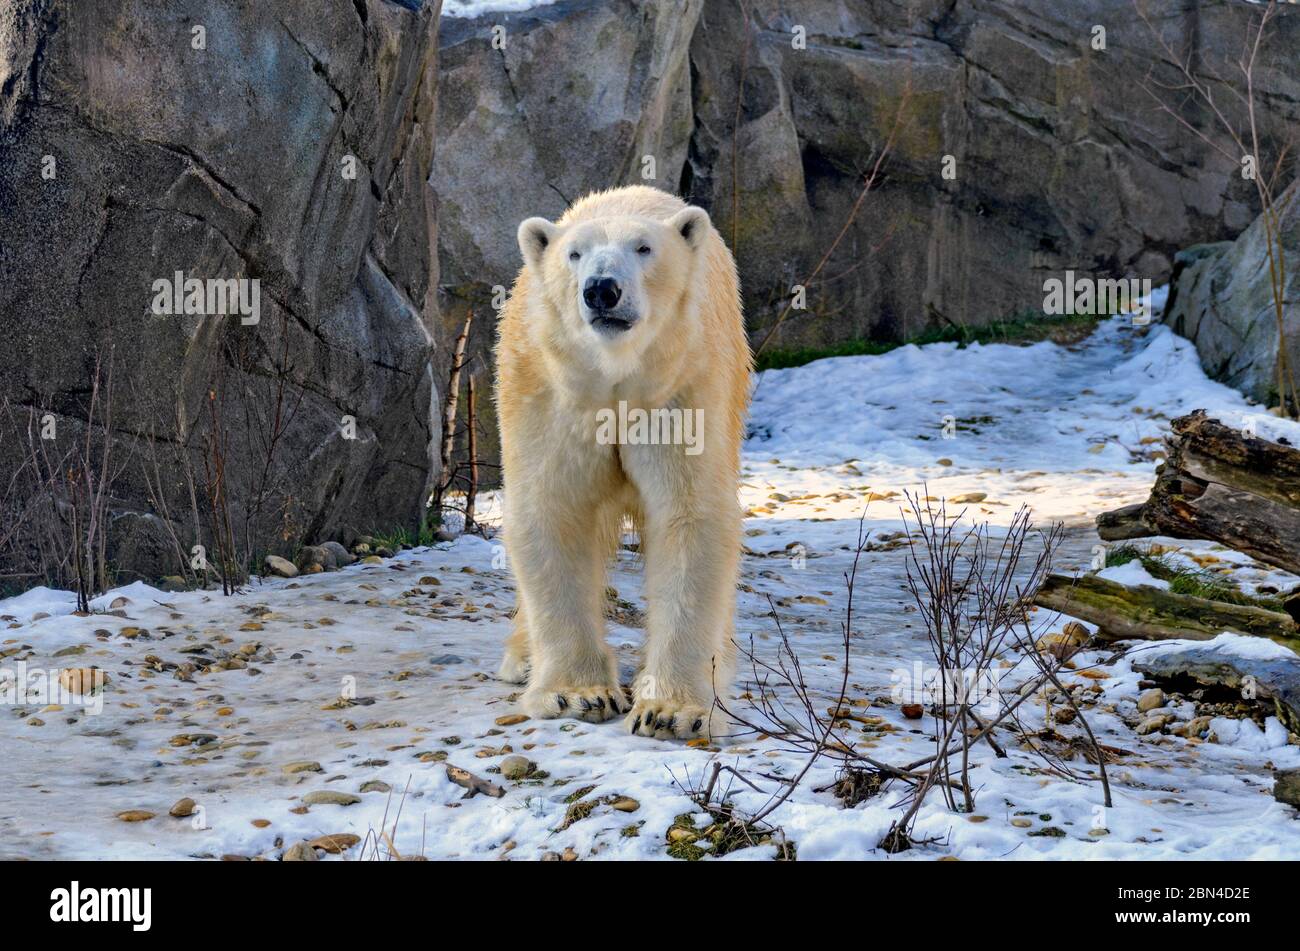 Ours de glace qui sillonnant un paysage enneigé dans un jardin zoologique, Autriche Banque D'Images